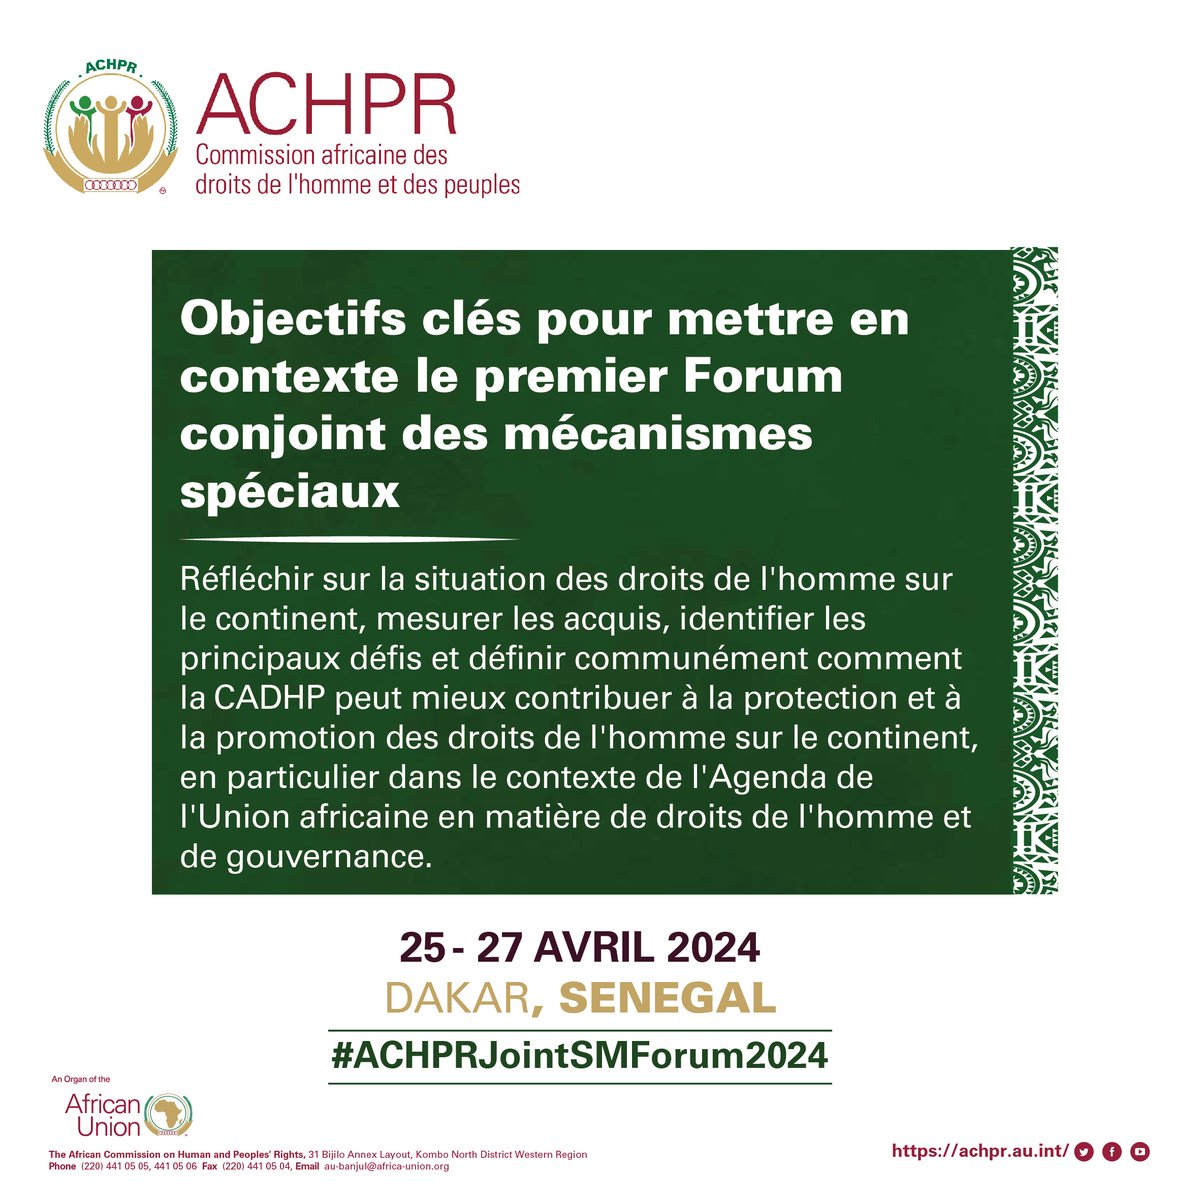 Le premier forum conjoint des mécanismes spéciaux de l'UE est le premier à avoir lieu. @achpr_cadhp se rapproche, voici quelques objectifs clés de cette importante réunion de haut niveau prévue du 25 au 27 avril 2024. #ACHPRJointSMForum2024